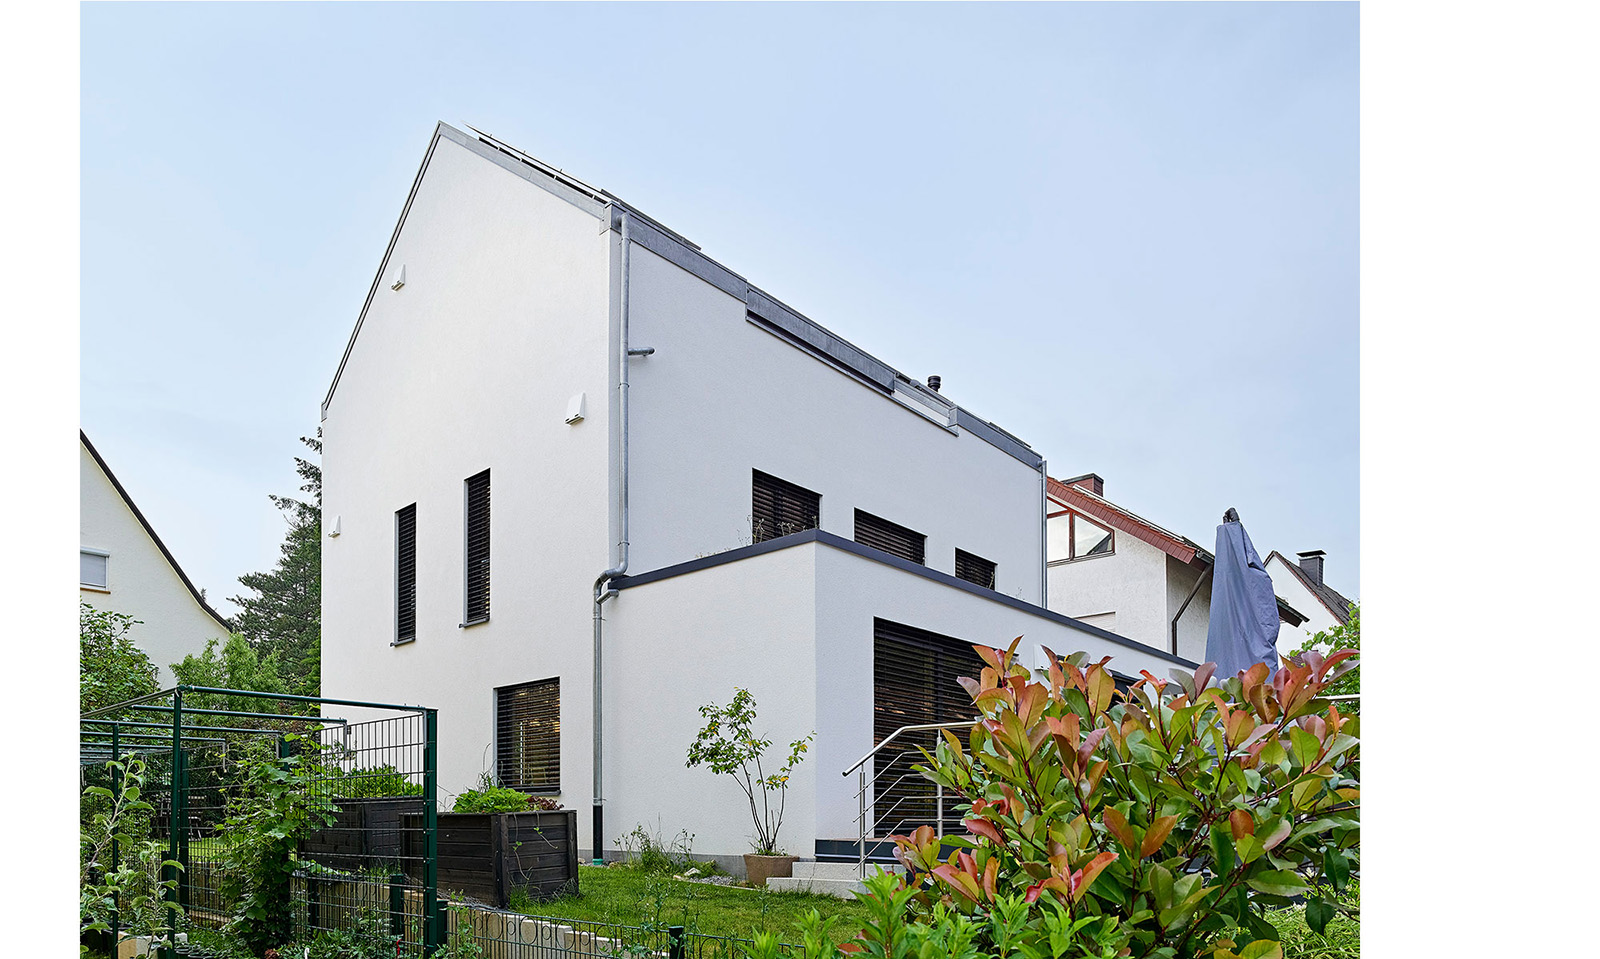 Modernes Haus in Holzbauweise Freiburg Breisgau | © Helmuth Scham BFF, Architektur Fotograf Konstanz